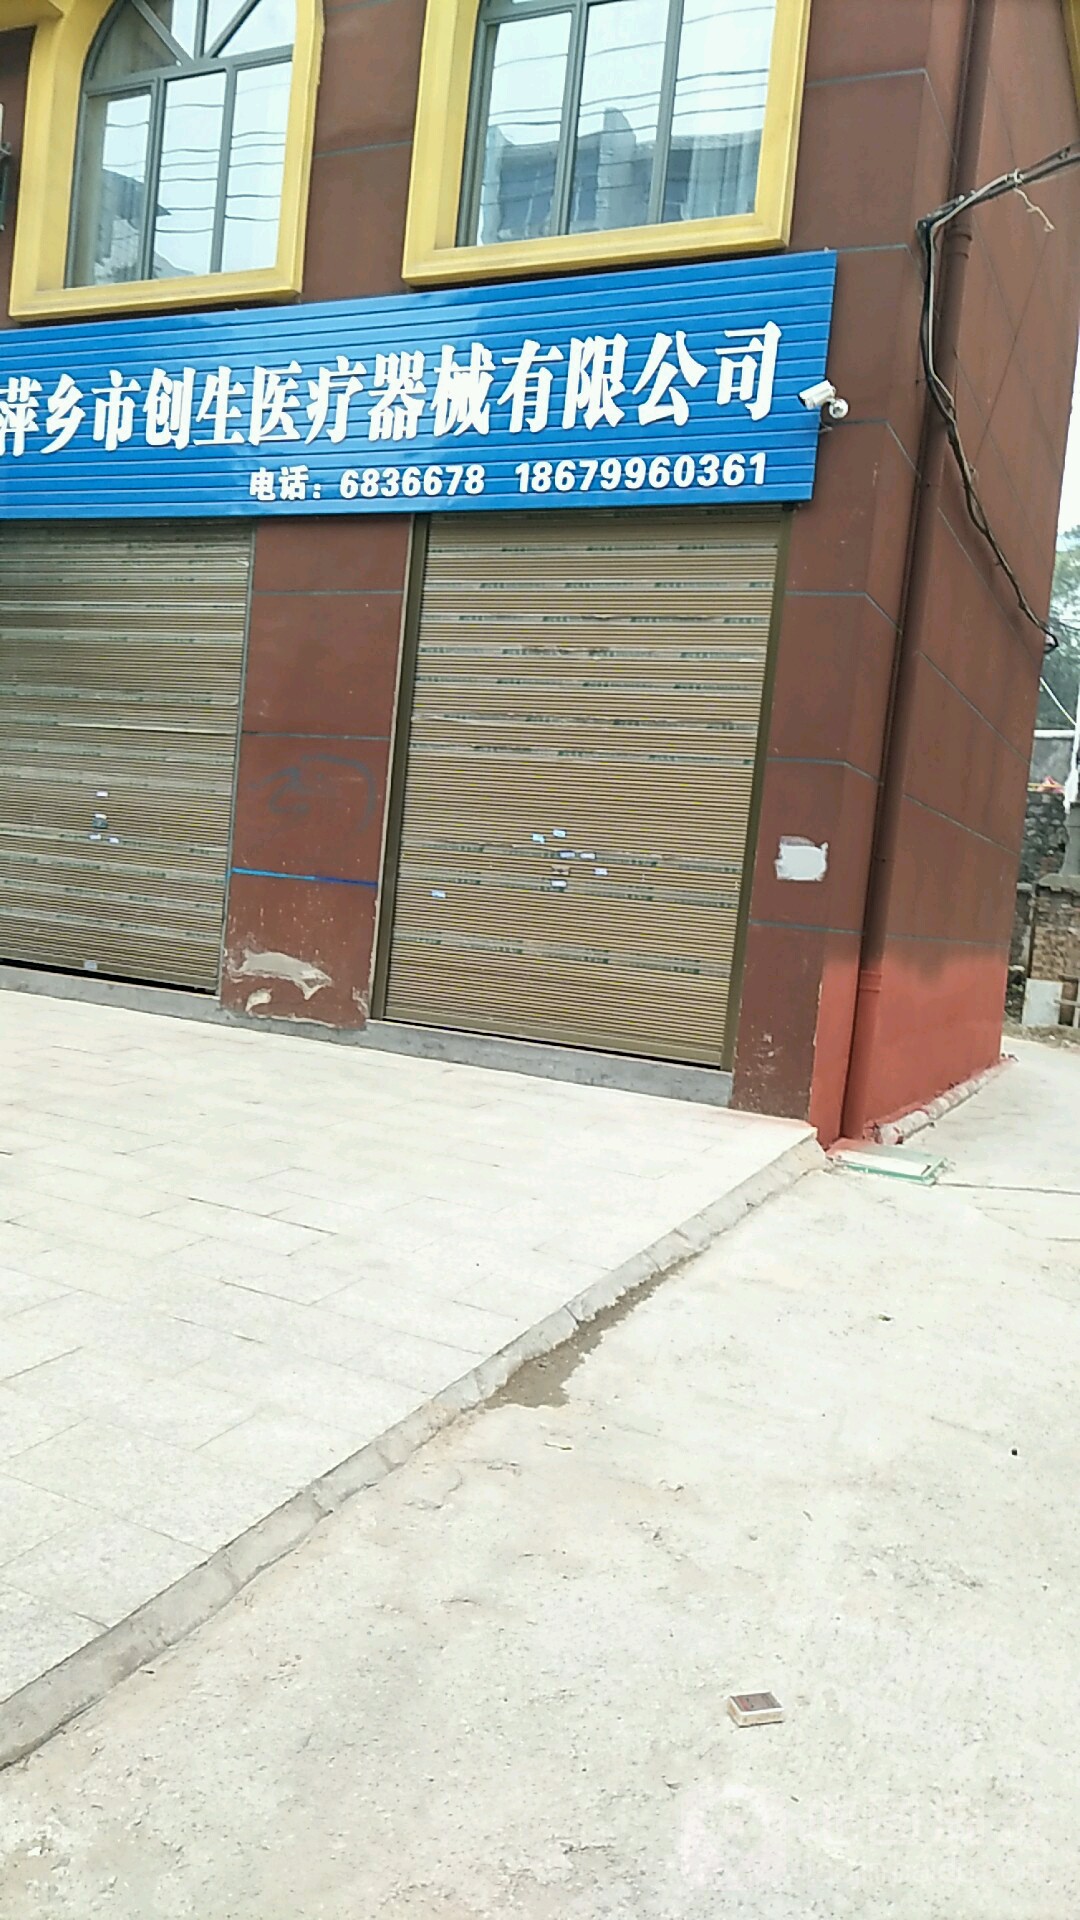 萍鄉市創生醫療器械有限公司